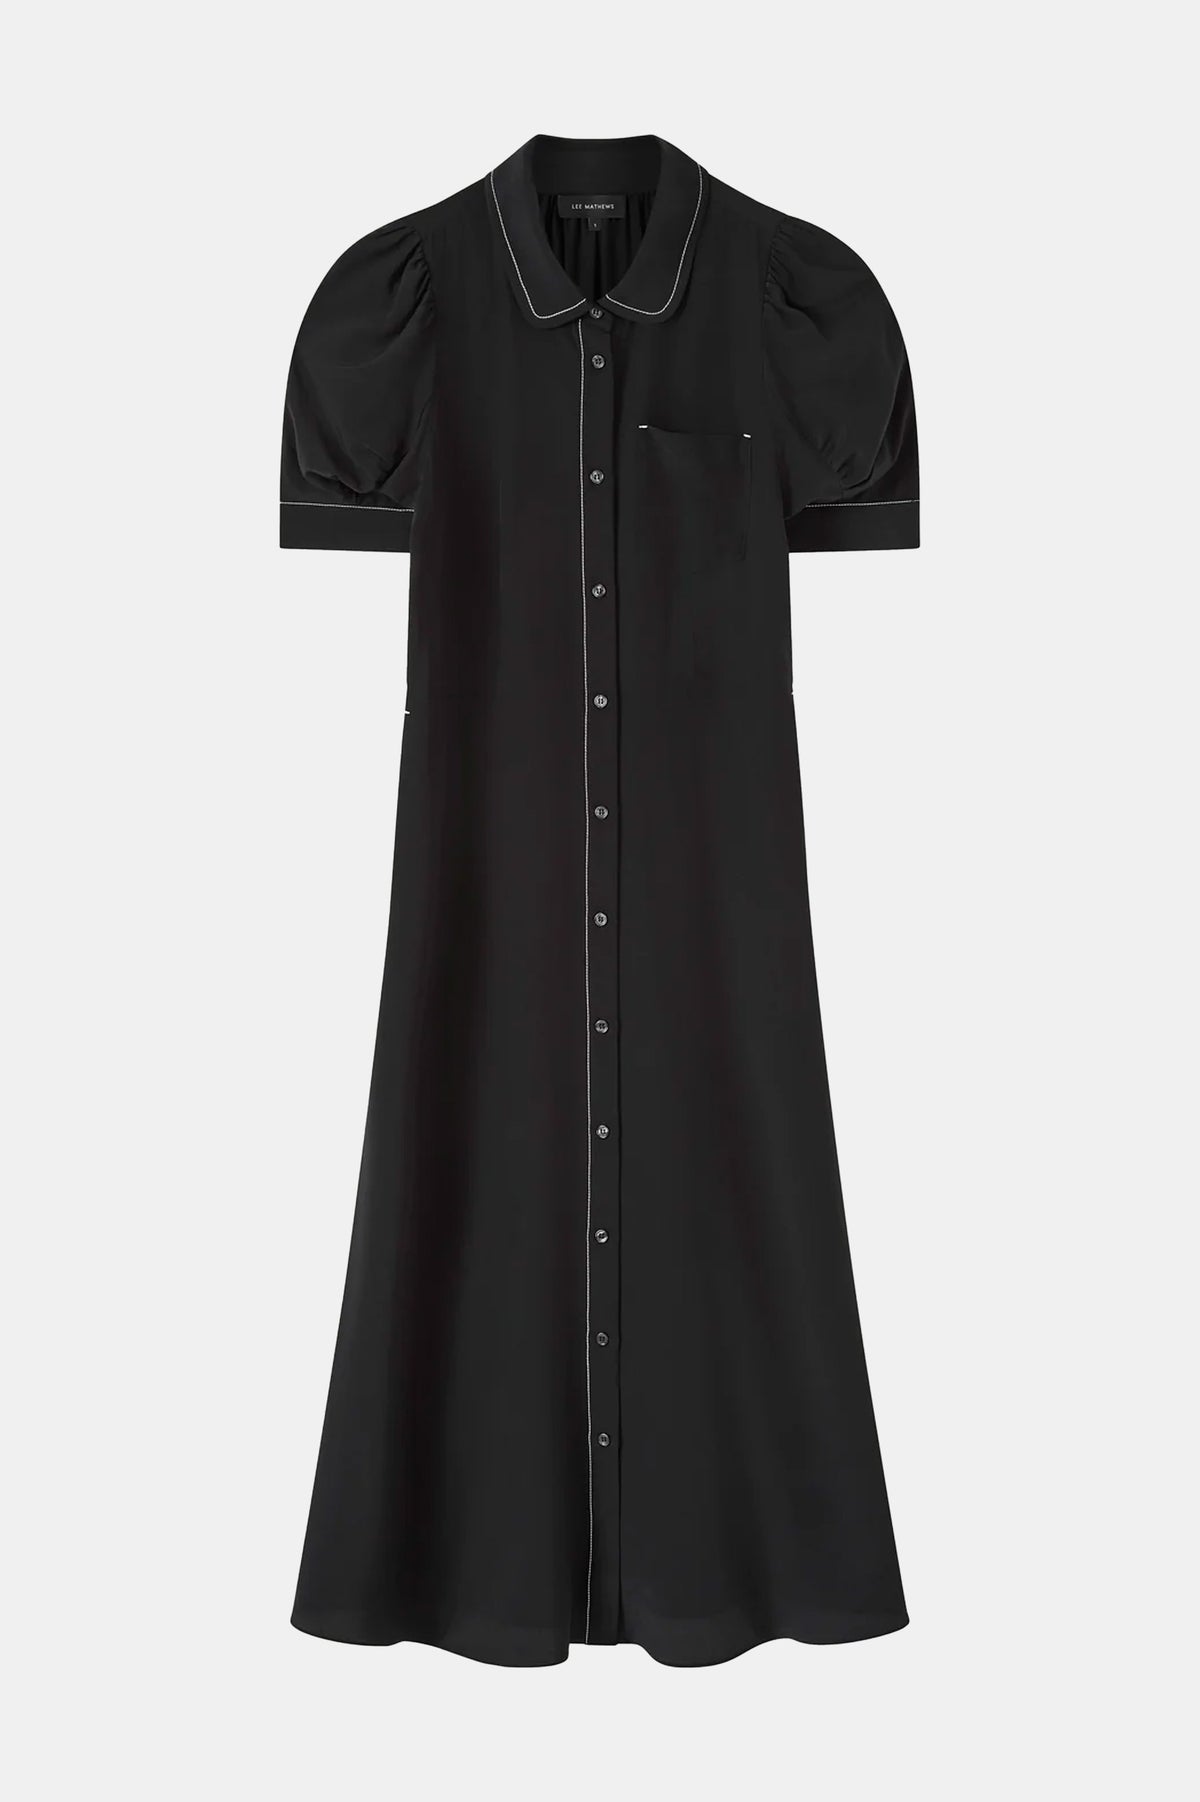 Cassini Short Sleeve Dress in Black